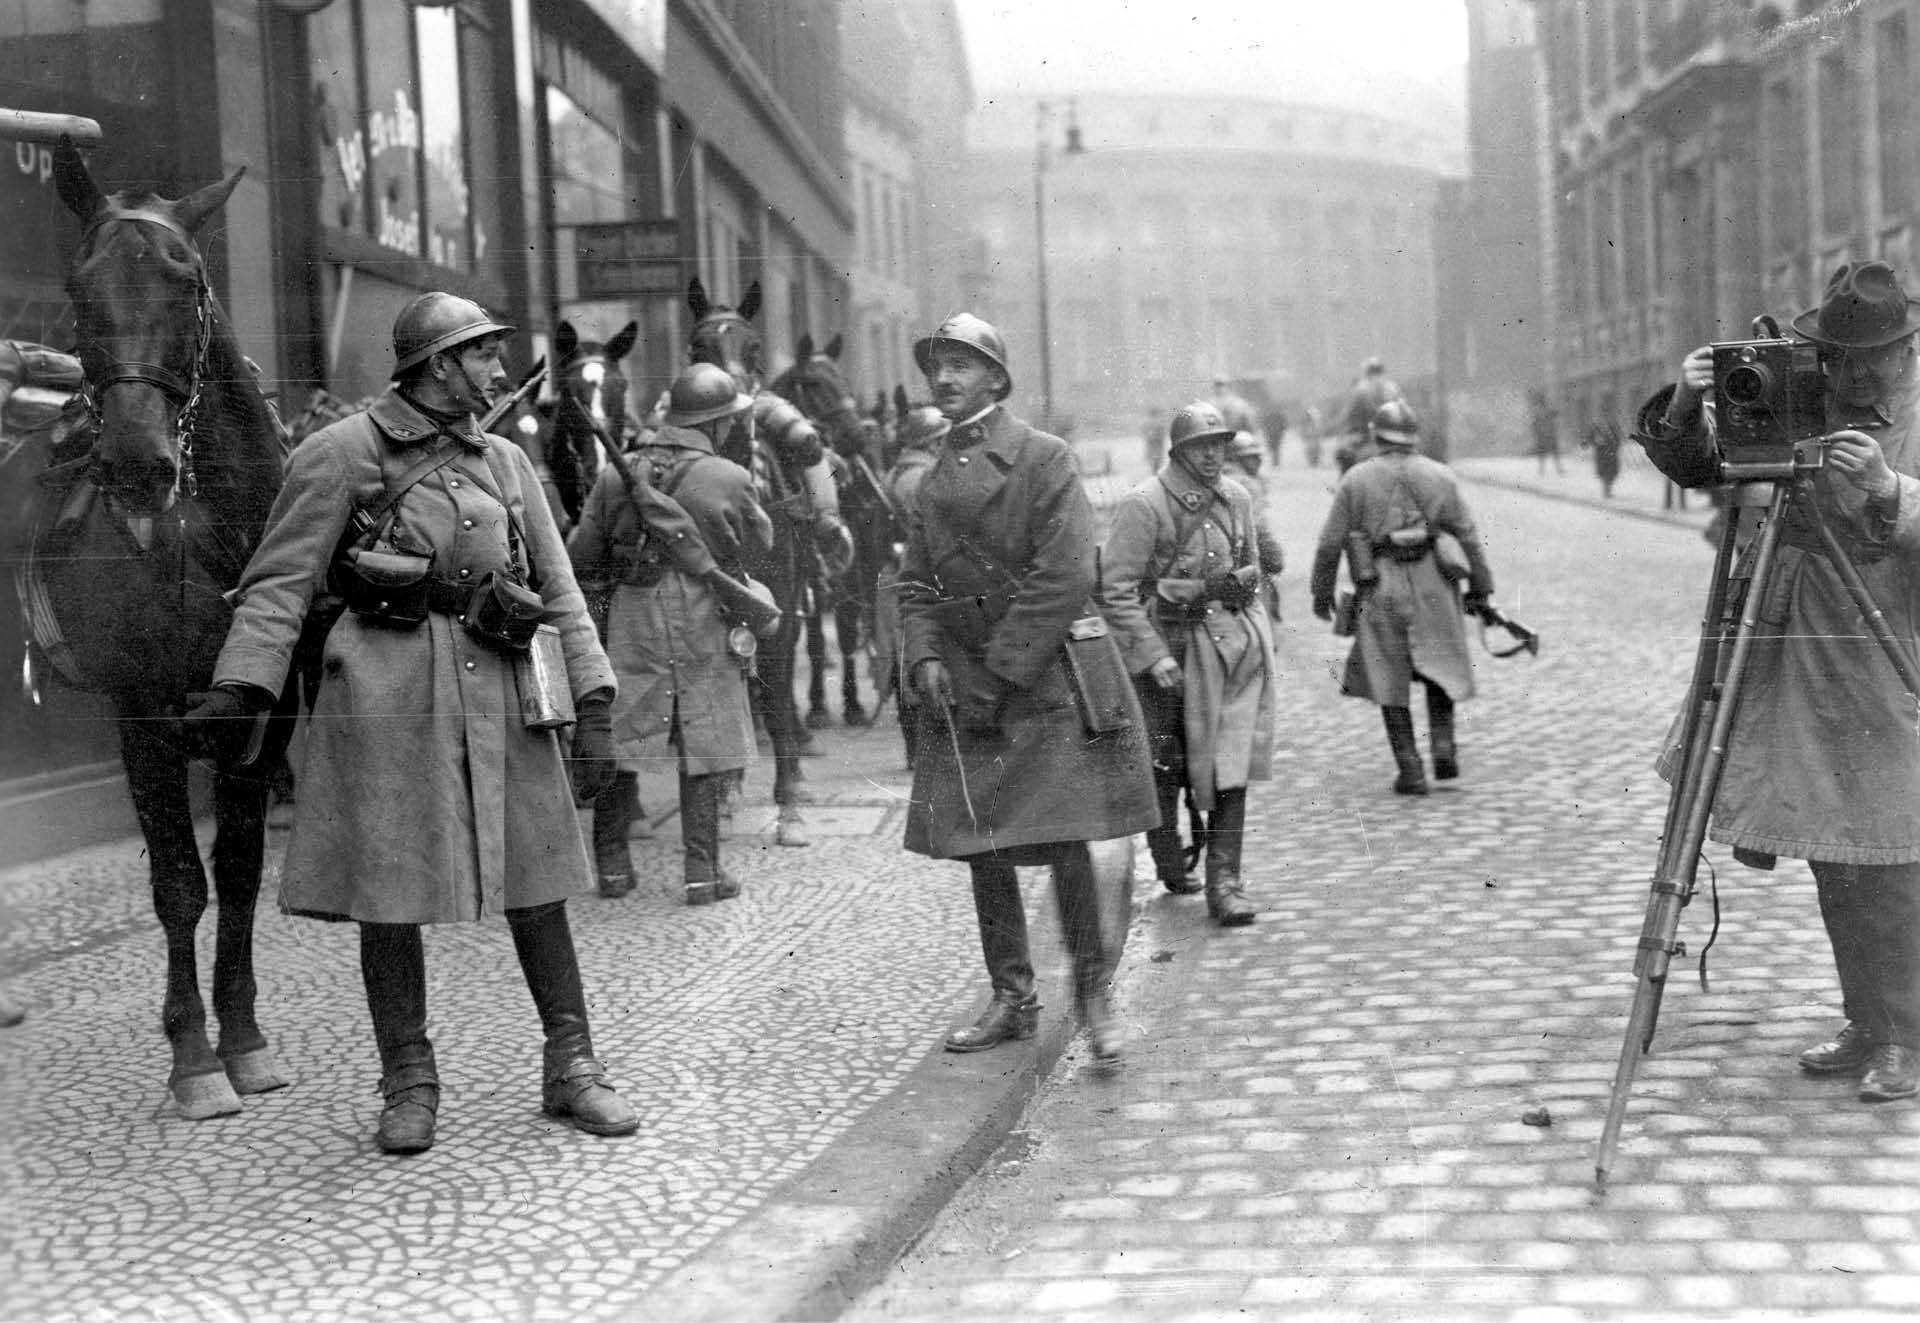 Okupacja Zagłębia Ruhry przez wojska francuskie wywołała wybuch hiperinflacji w Republice Weimarskiej. Essen, 11 stycznia 1923 r.